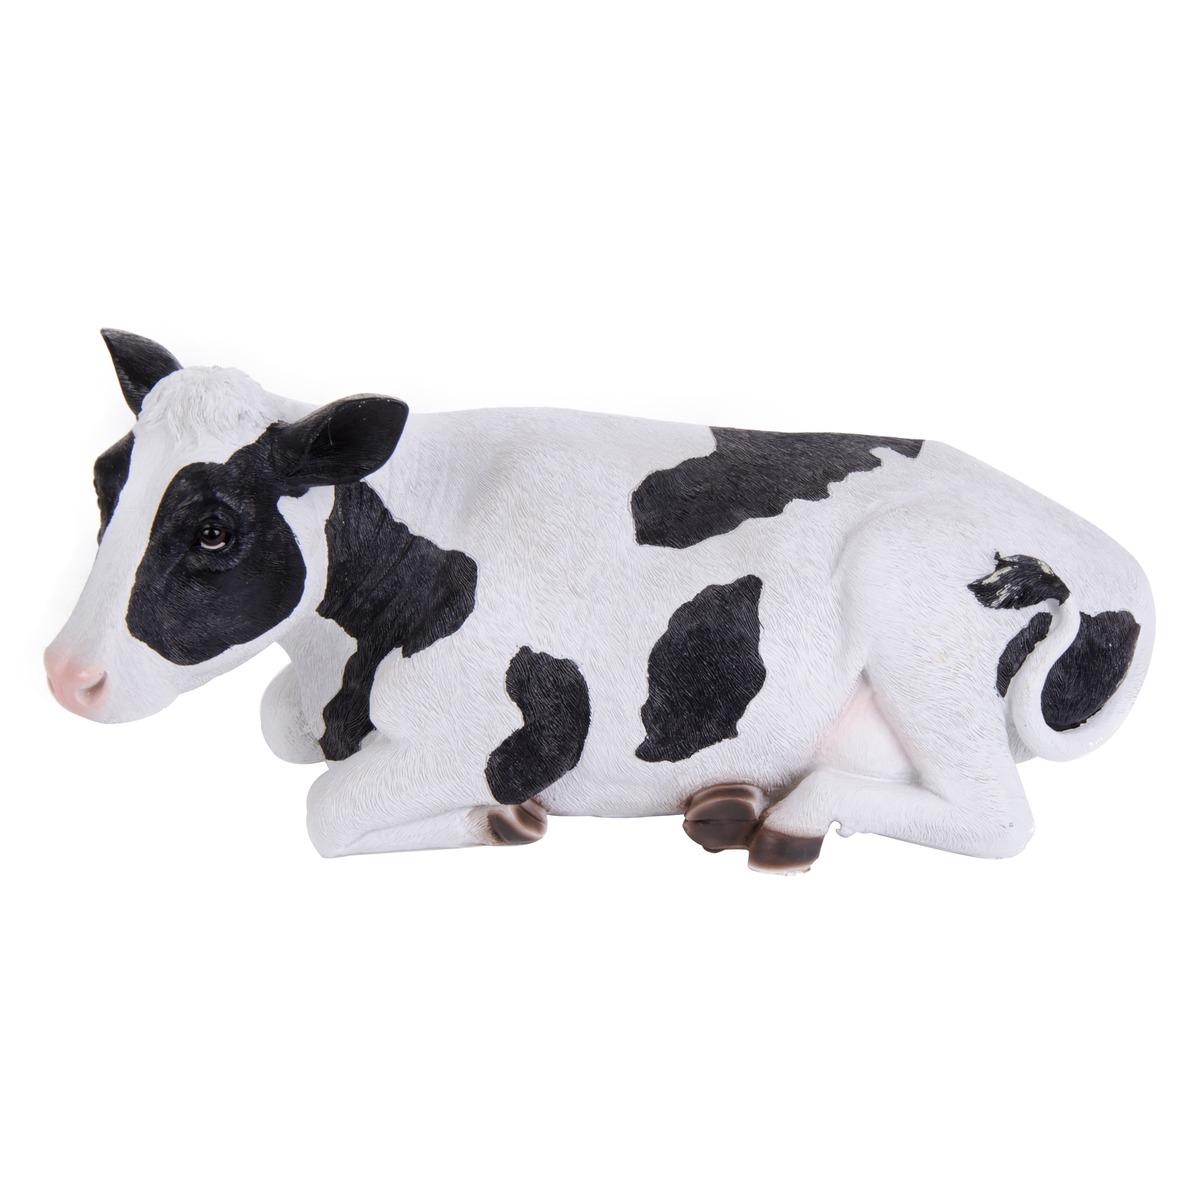 Vache allongée déco - 37,5 x 16,5 x H 16,5 cm - Noir, blanc